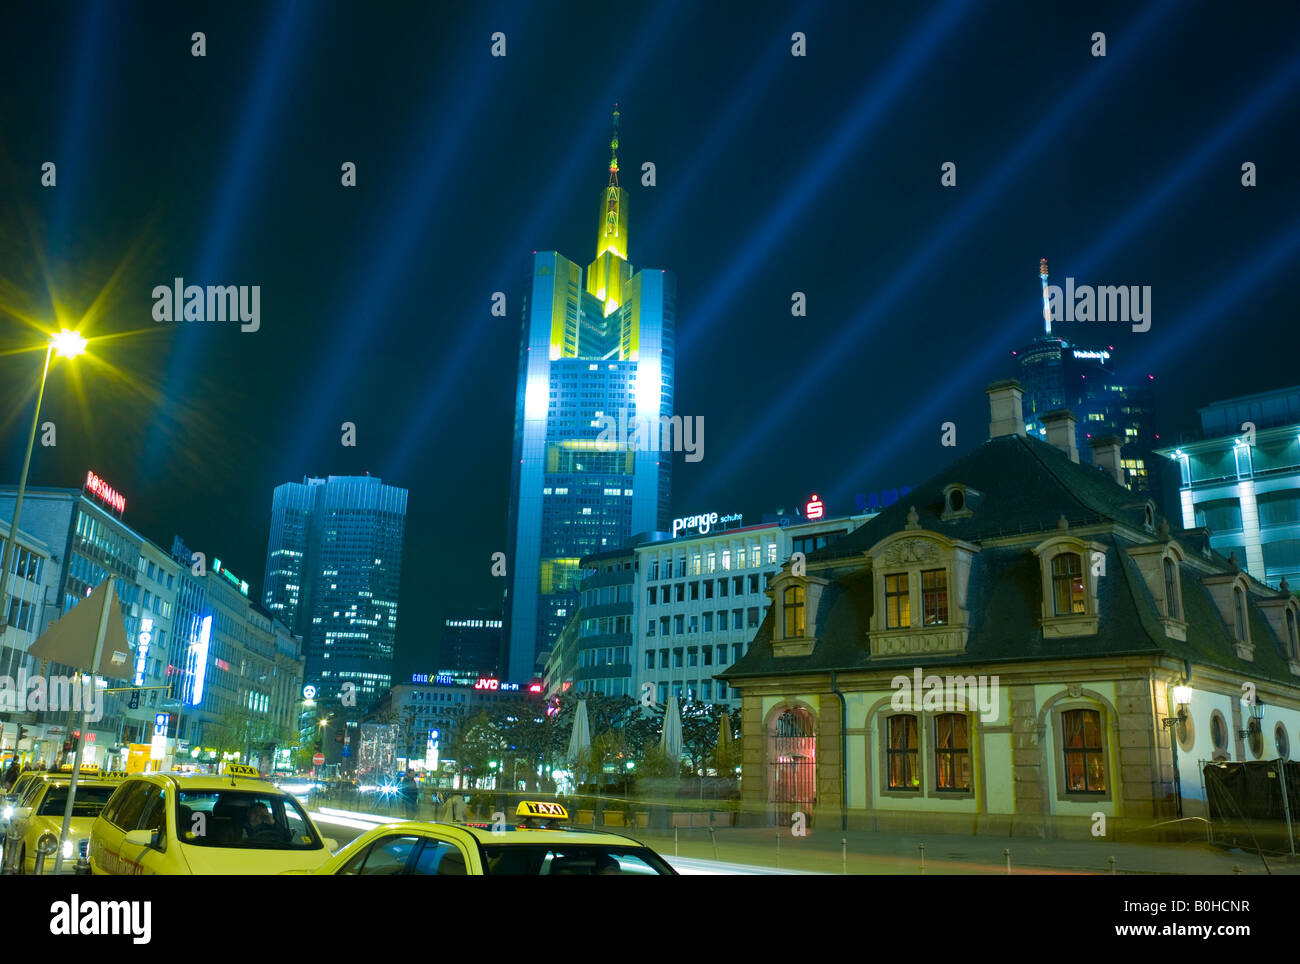 Frankfurt iluminado en la noche, los edificios iluminados con iluminación especial con ocasión de la Luminale, bianual festival de iluminación Foto de stock